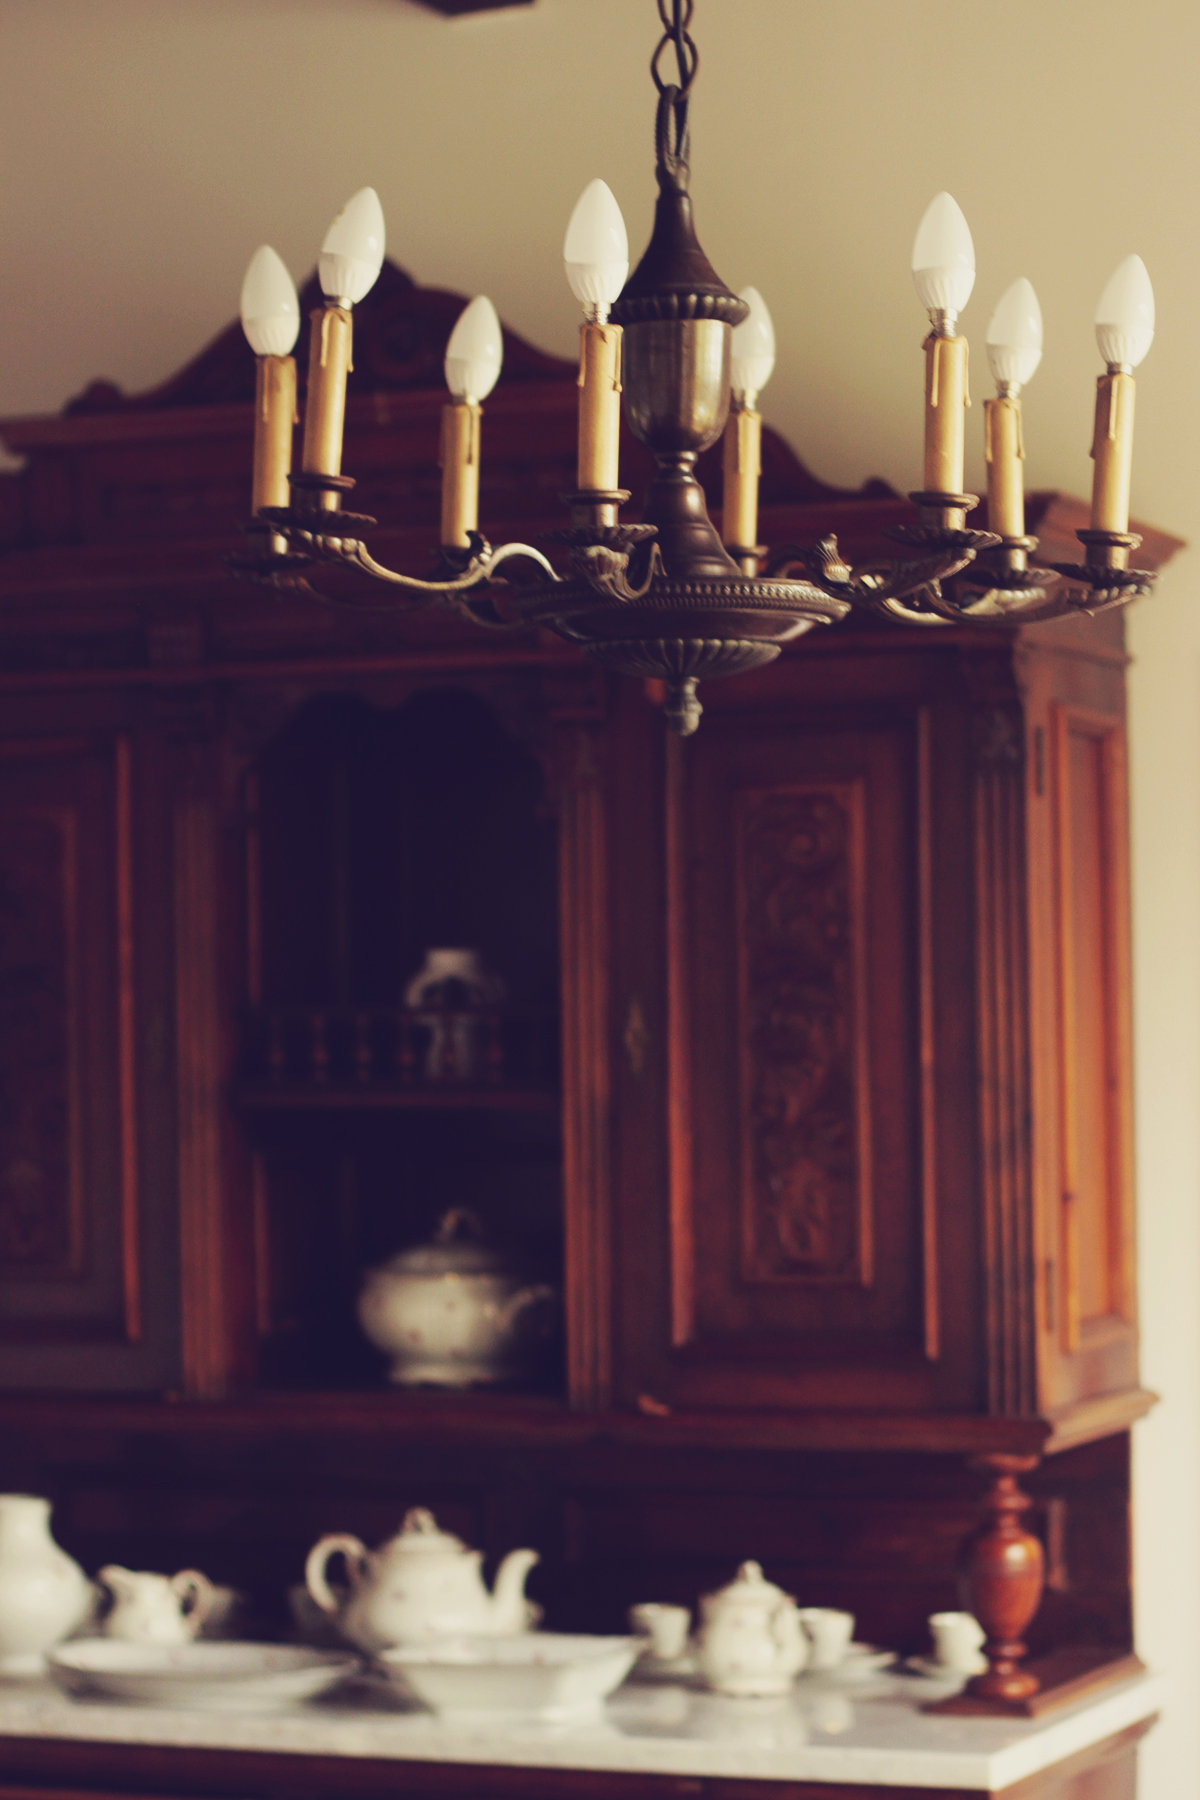 vintage china sets, chandelier, old room, old mansion, wooden furniture